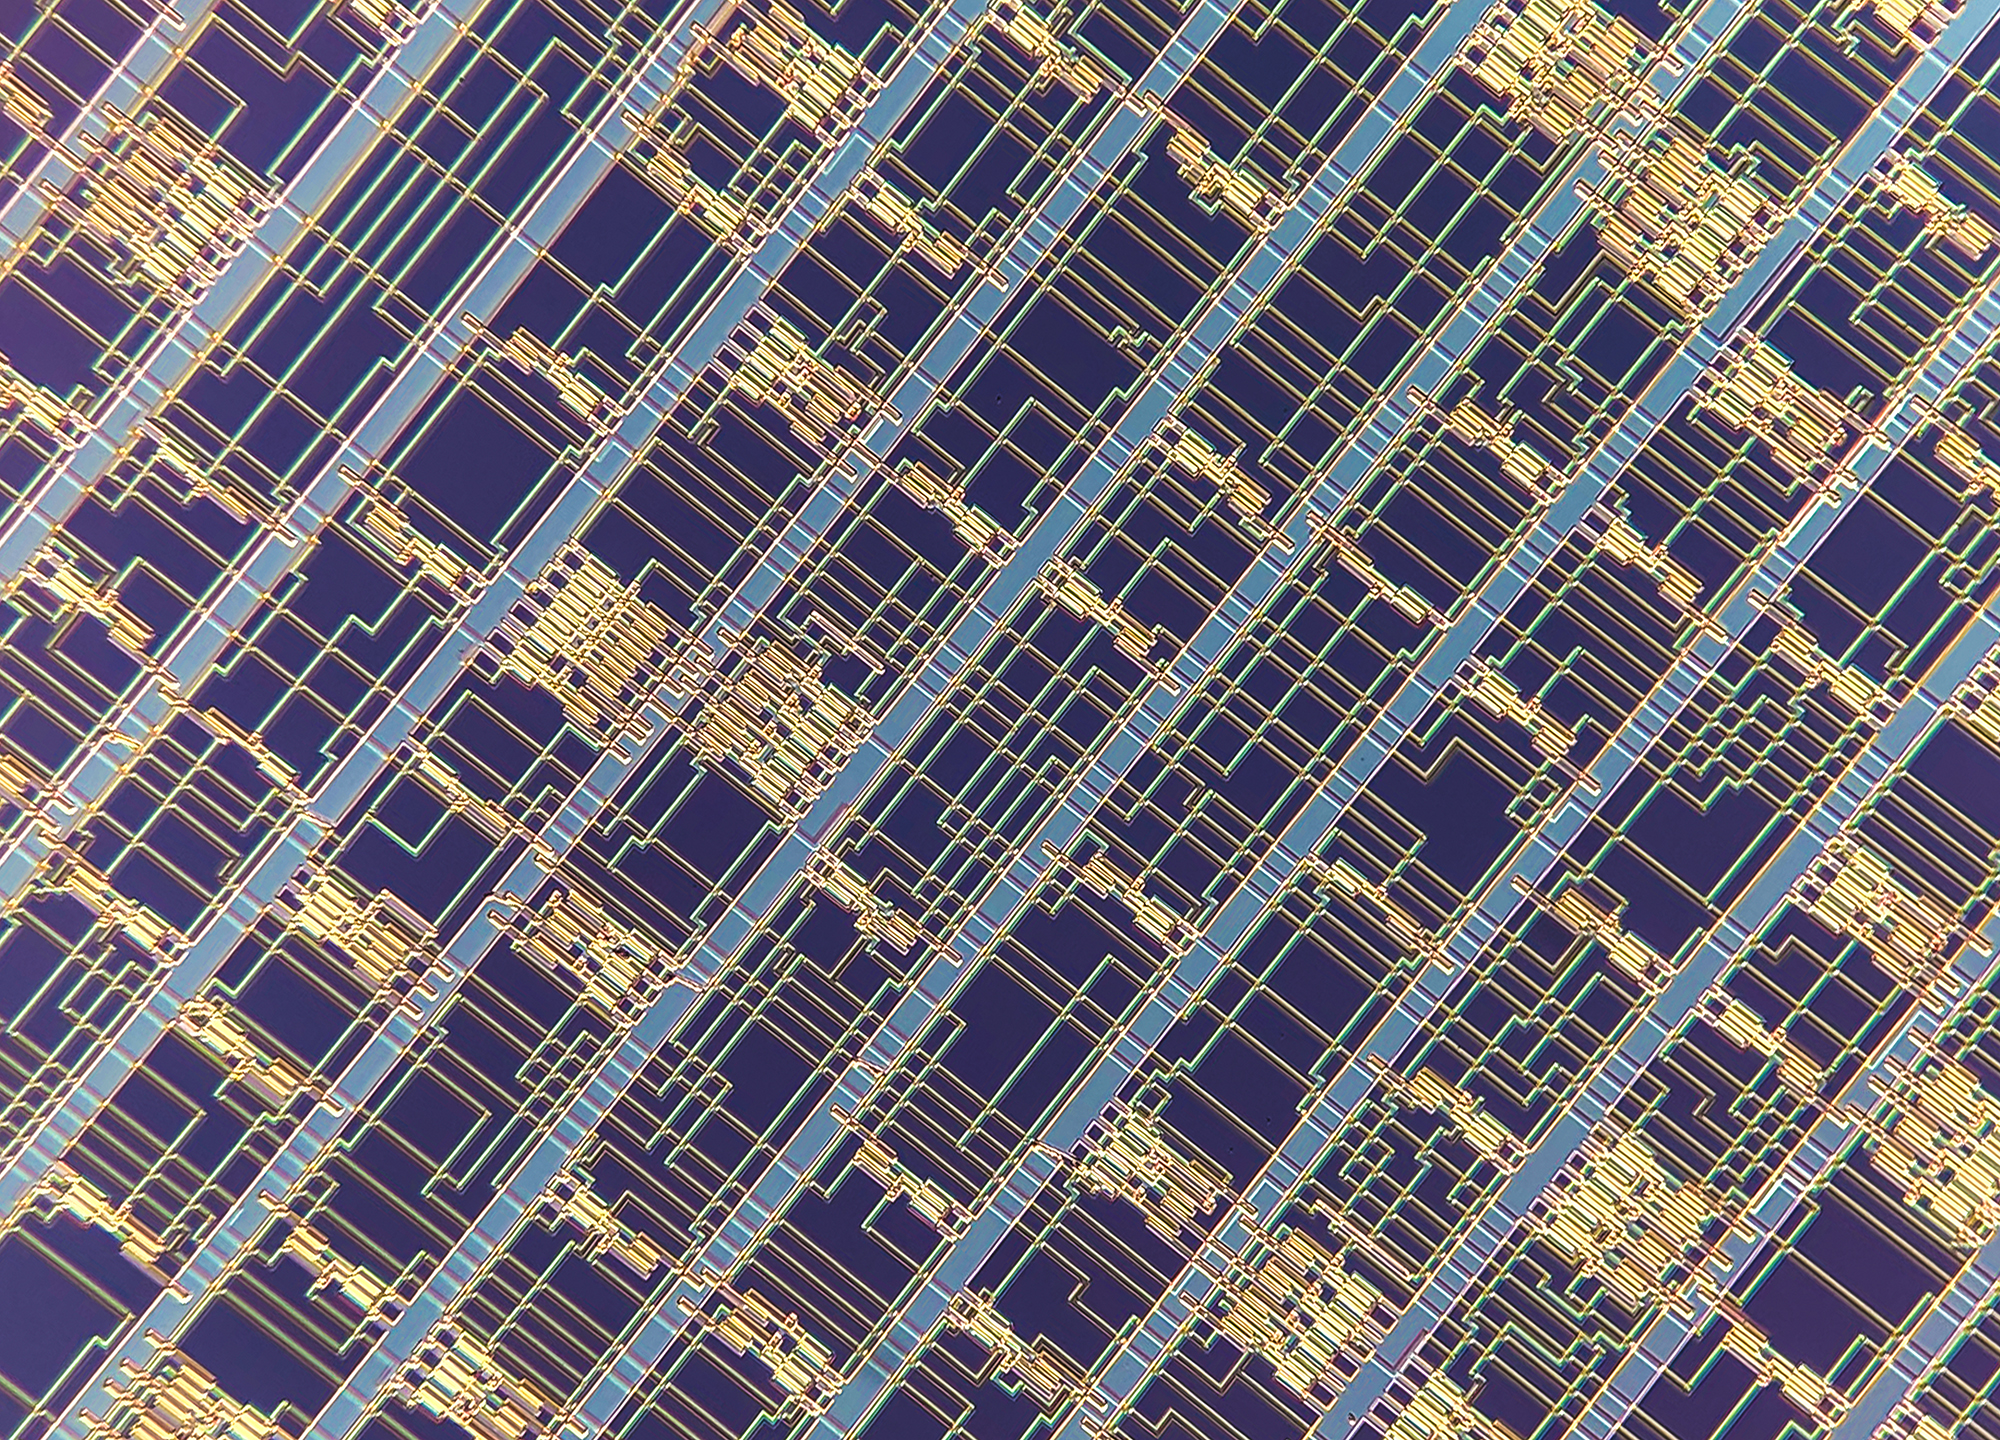 Los ingenieros del MIT construyen microprocesadores avanzados a partir de nanotubos de carbono.